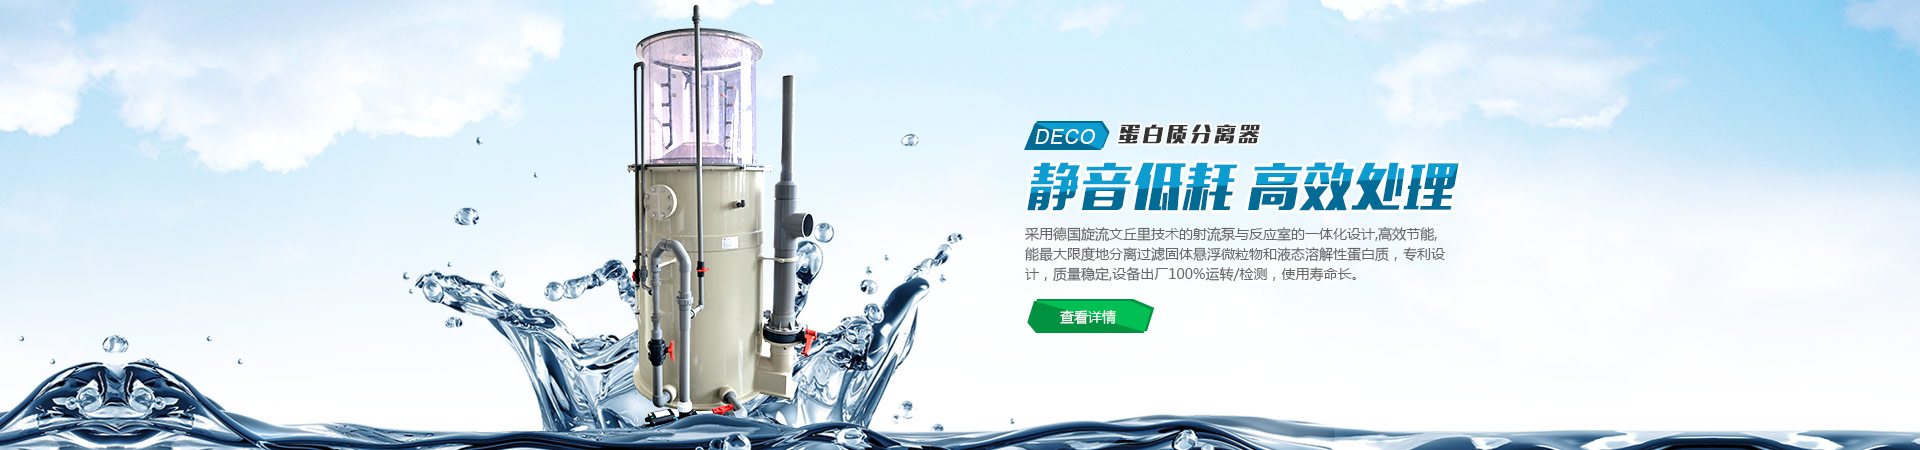 奥菲科泰电气北京有限公司西安分公司